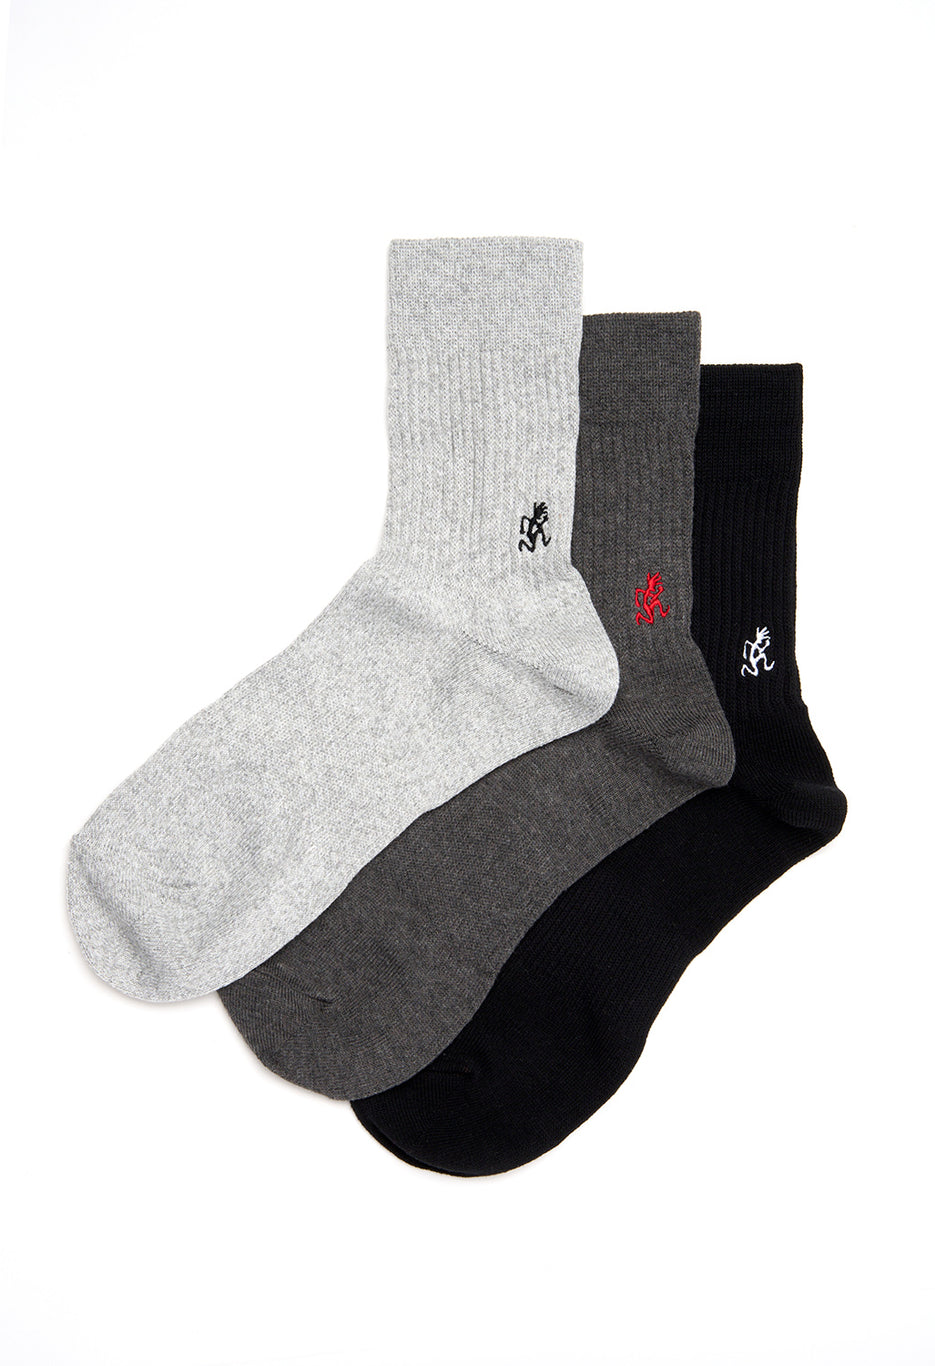 Gramicci Men's Basic Crew Socks - Black